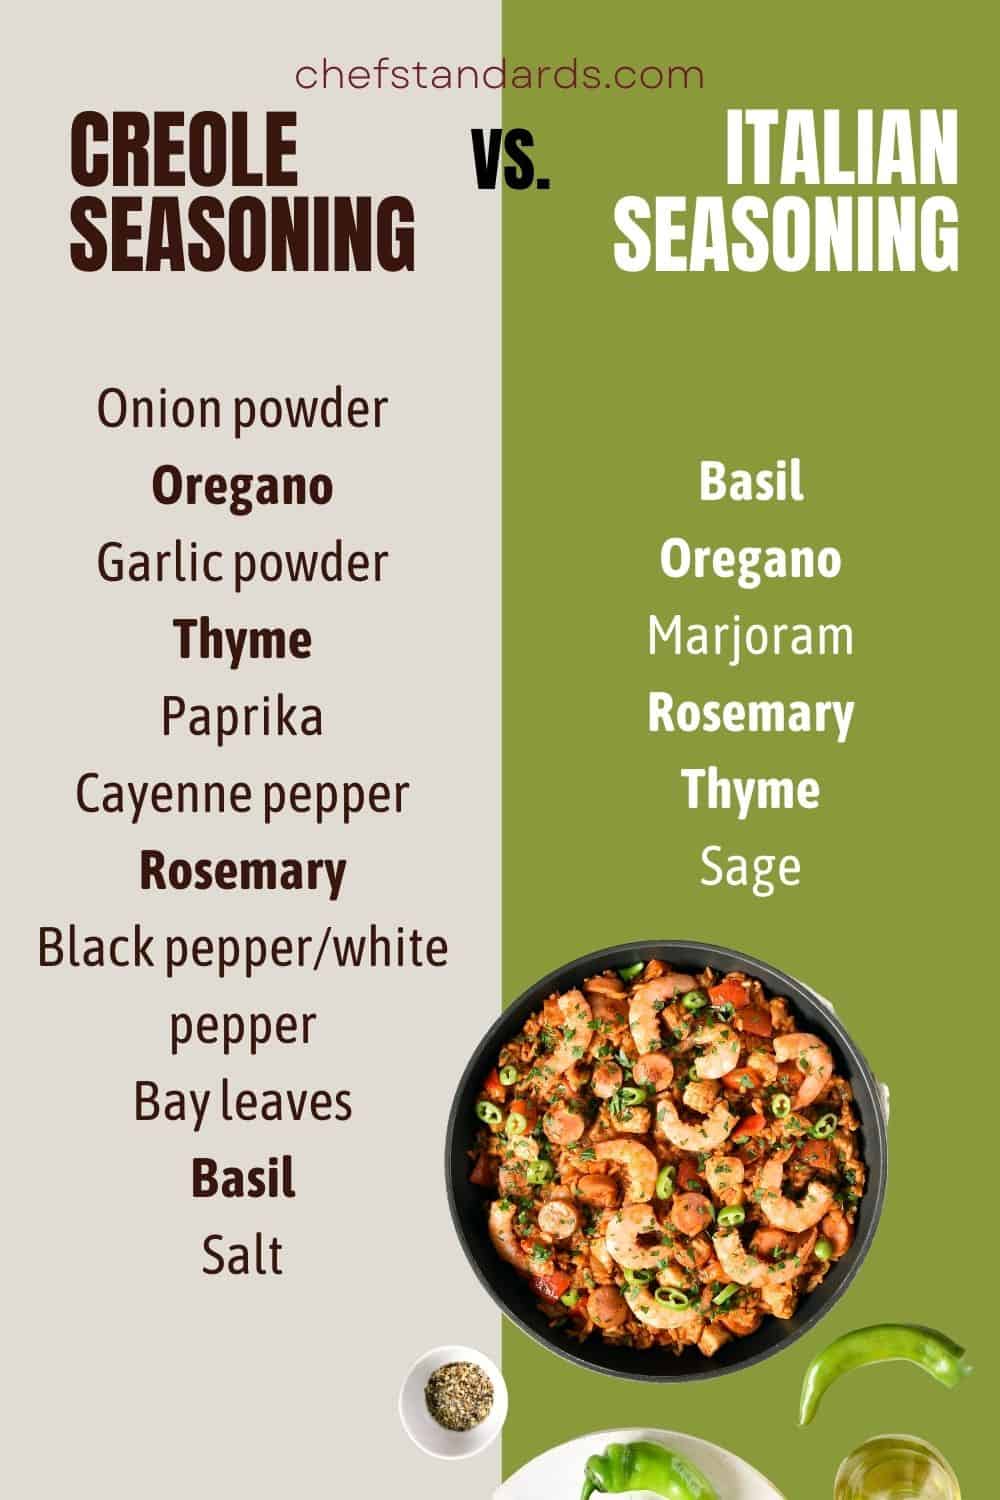 CREOLE SEASONINGvs. Italian seasoning